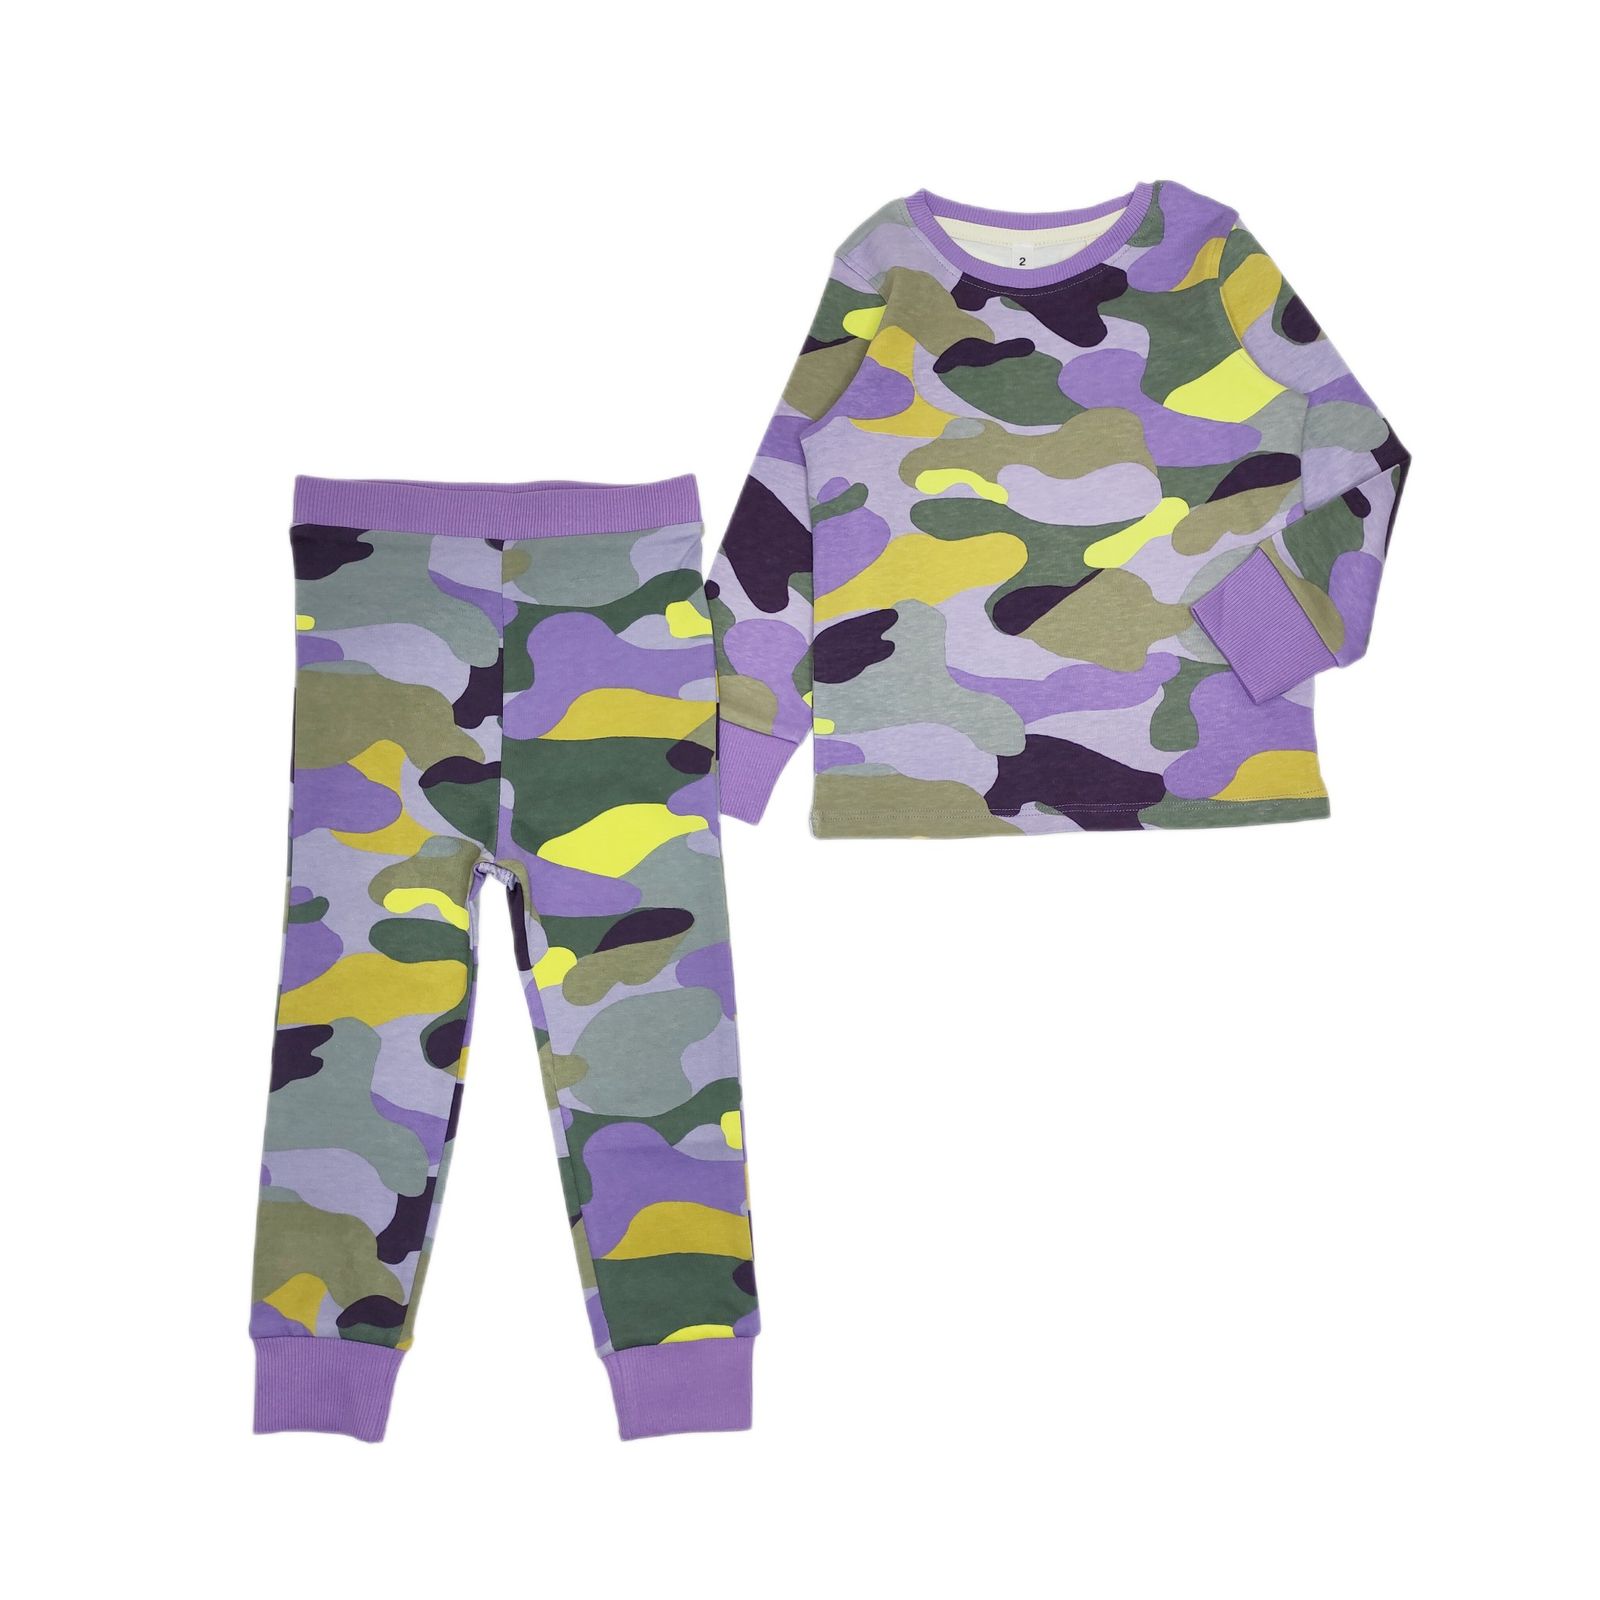 ست تی شرت و شلوار بچگانه نکست مدل ارتشی رنگی کد 2032 -  - 1